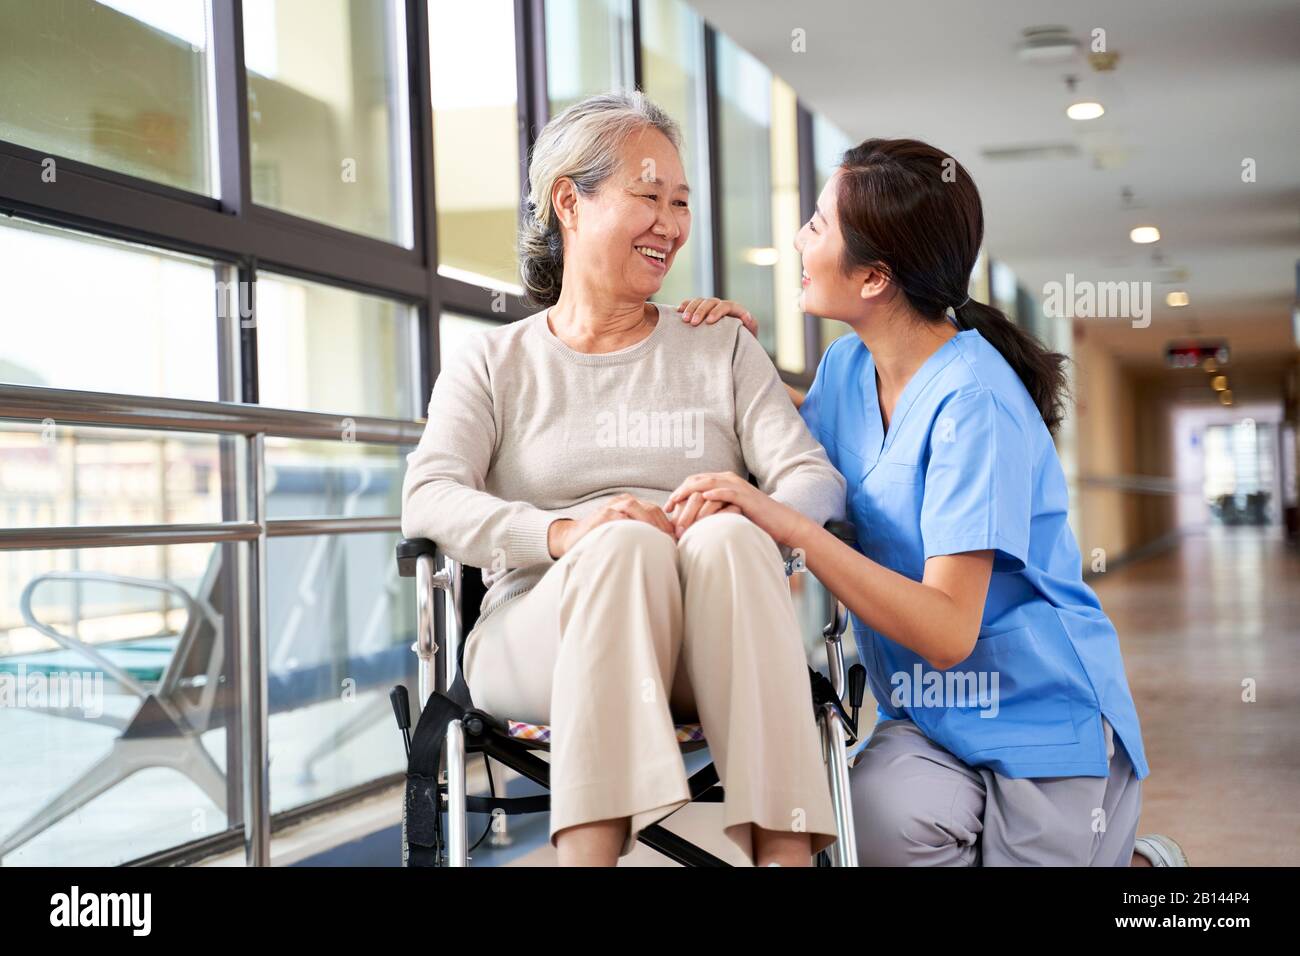 personnel amical soignant de la maison de soins de santé parlant à la femme asiatique senior dans le couloir Banque D'Images